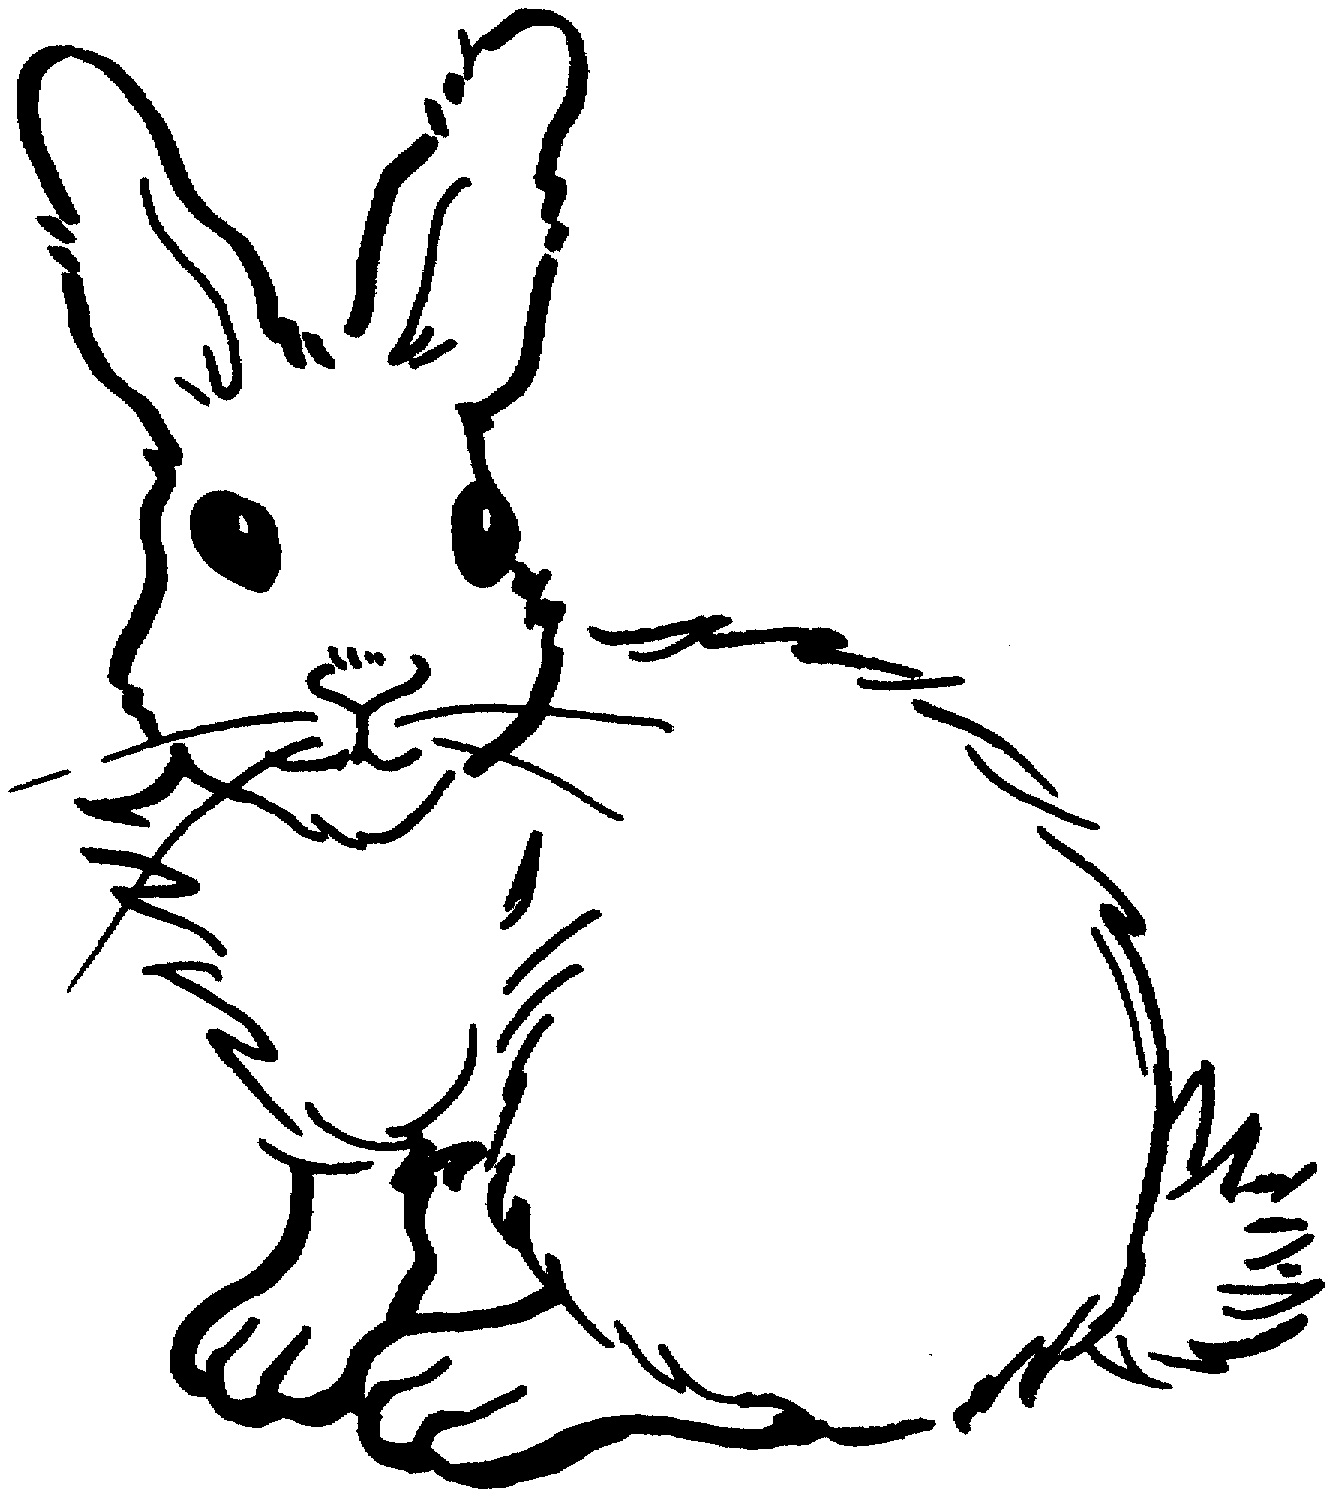 Jack Rabbit coloring #5, Download drawings